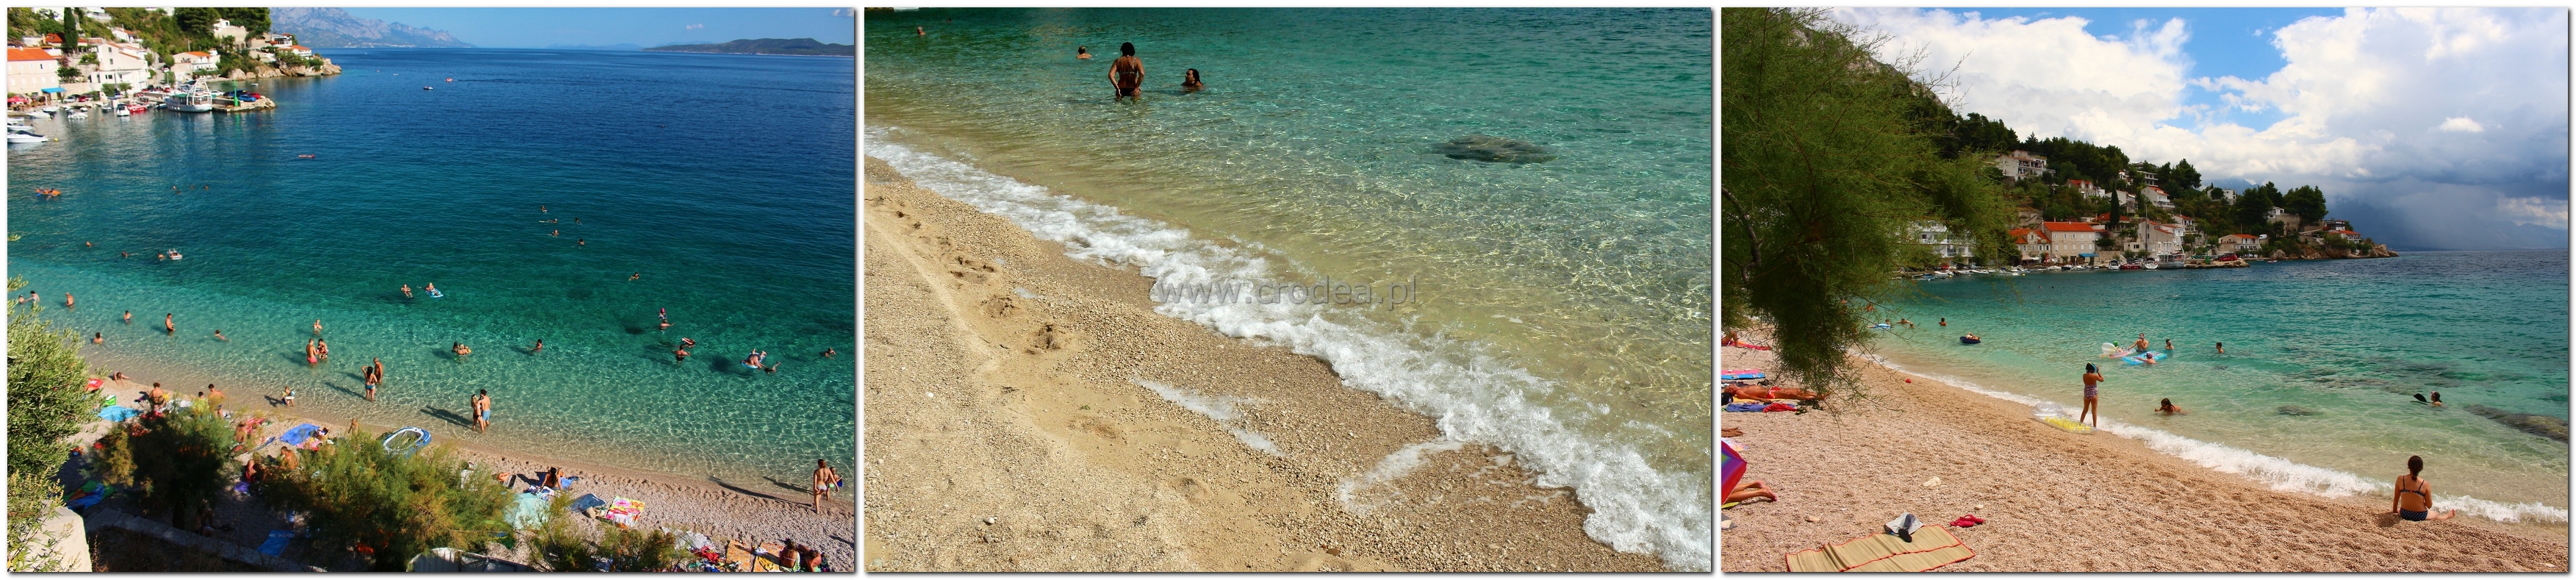 Piaszczyste plaże w Chorwacji